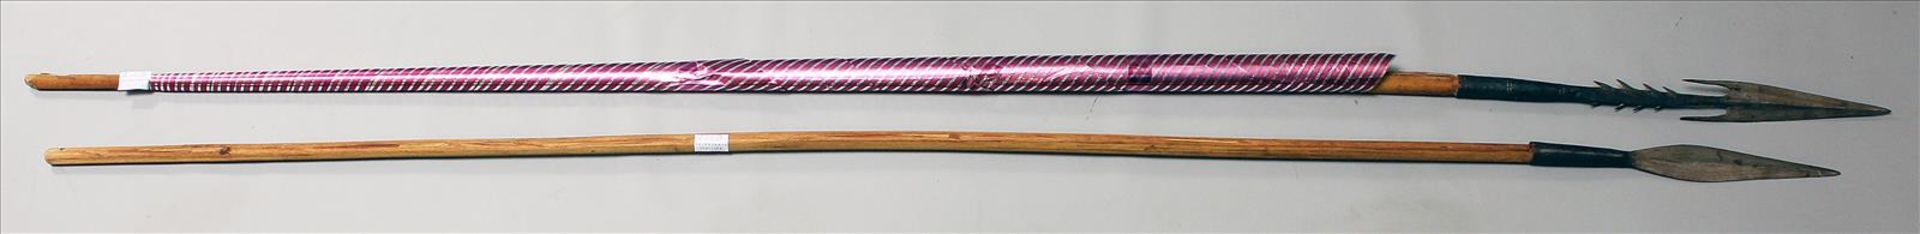 2 afrikanische Speere.Eisenklingen. Holzschäfte. L. 140 bzw. 149 cm. - Bild 2 aus 2